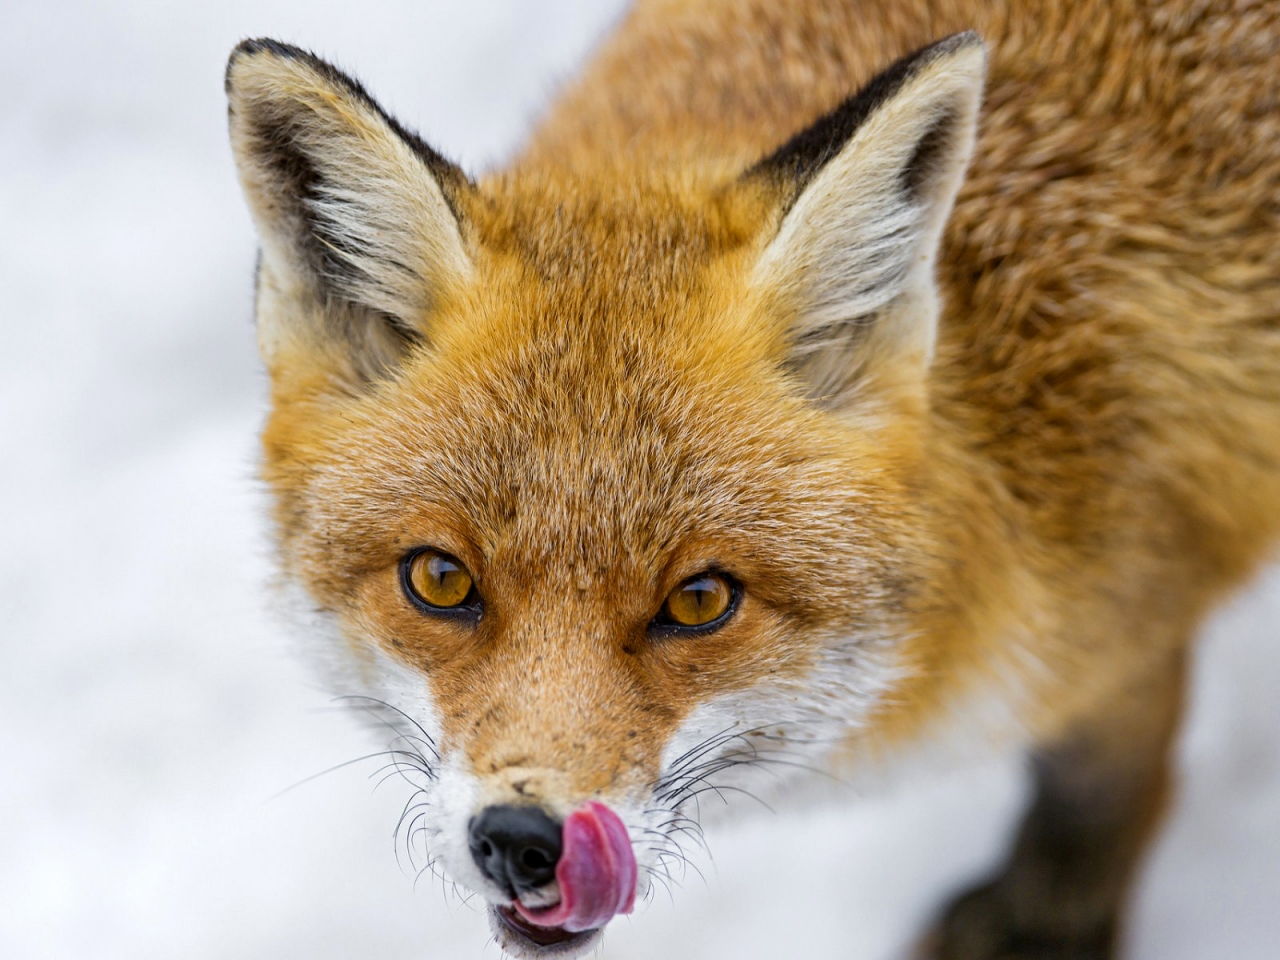 Greedy Fox for 1280 x 960 resolution